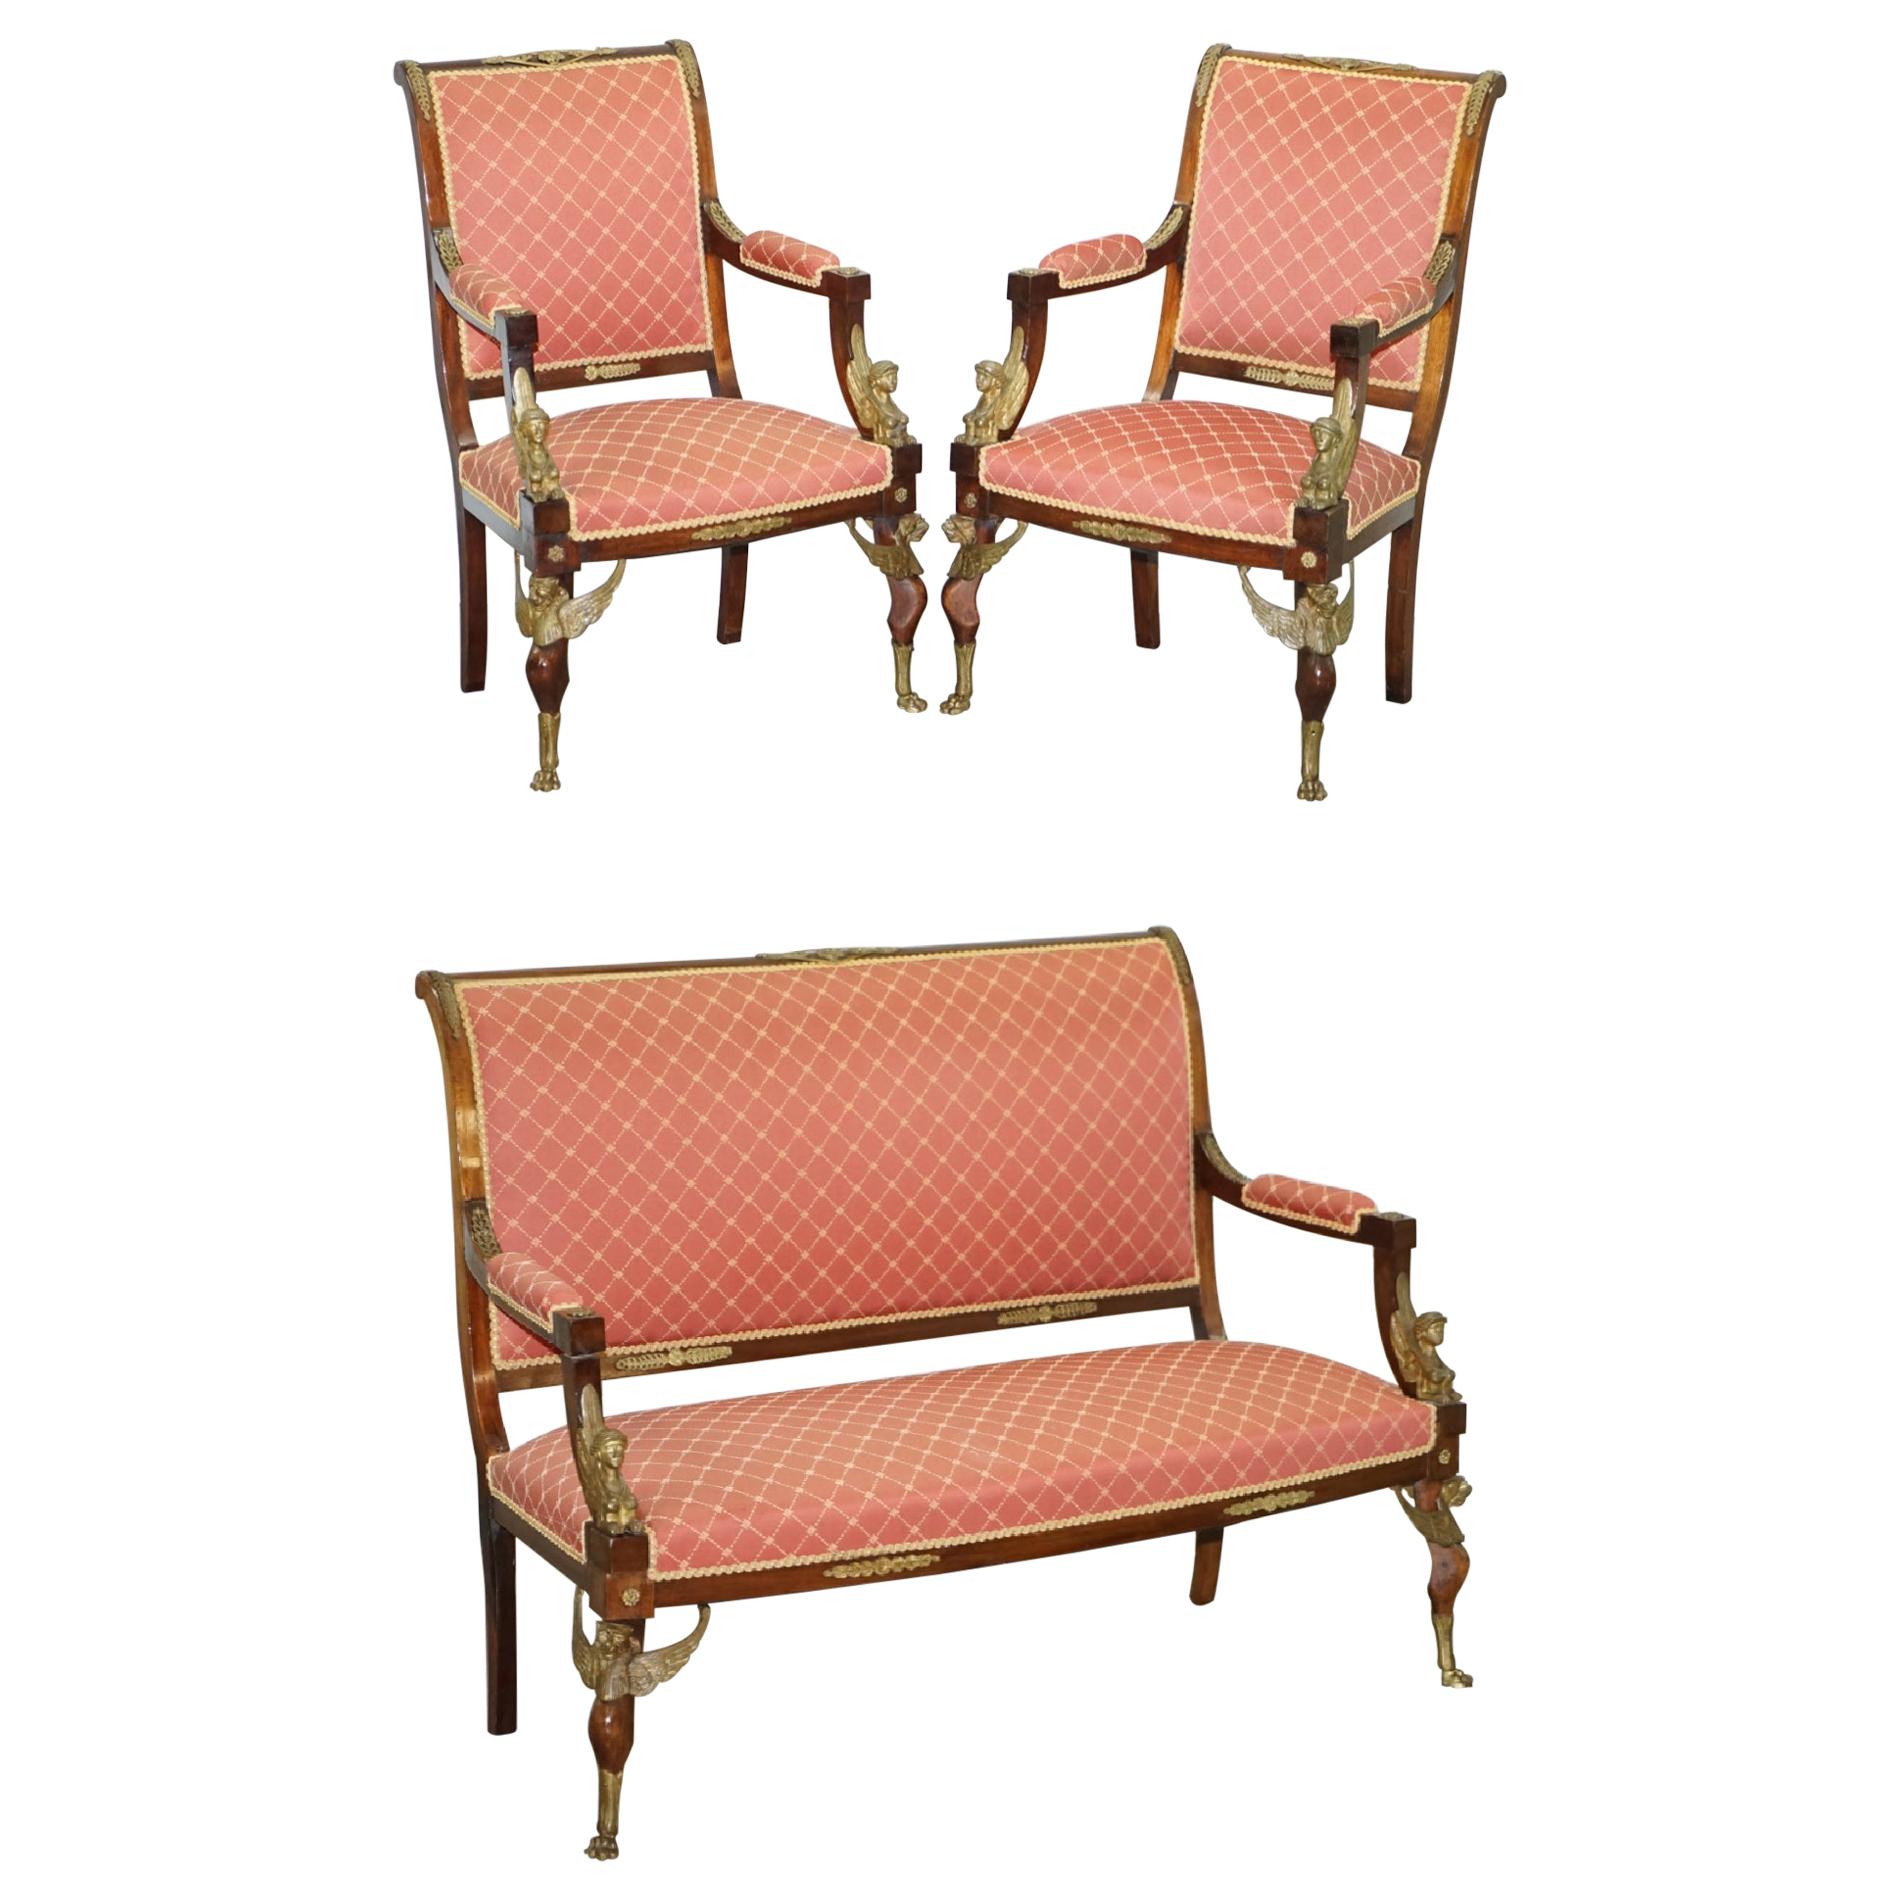 Suite-Sofa-Sessel aus ägyptischem Hartholz, Goldbronze- Sphinx, Französisches Empire, 19. Jahrhundert